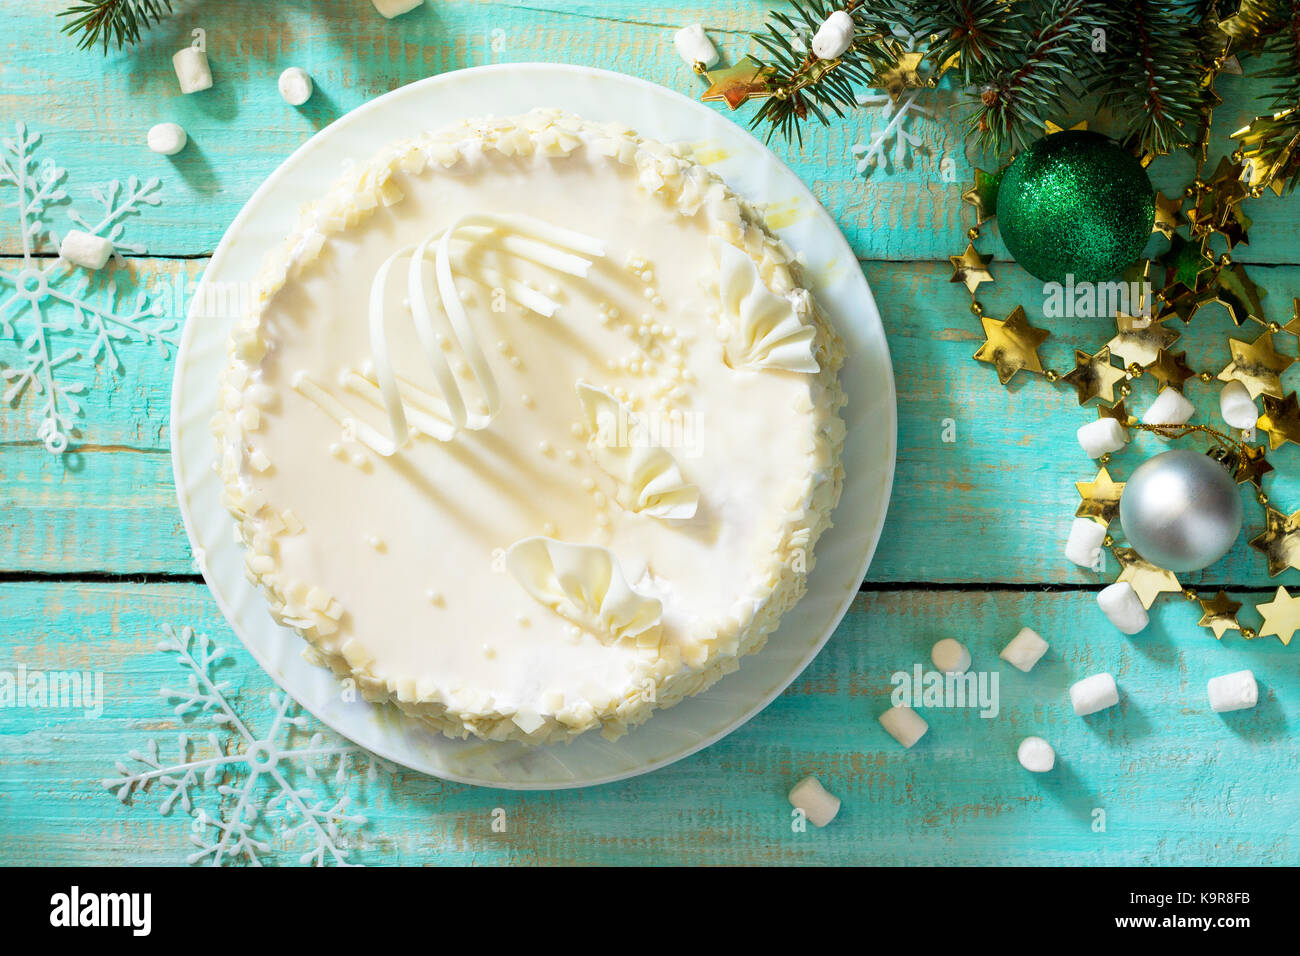 Geburtstagskuchen mit weißer Schokolade auf einem festlichen Weihnachtstisch. Draufsicht. Stockfoto